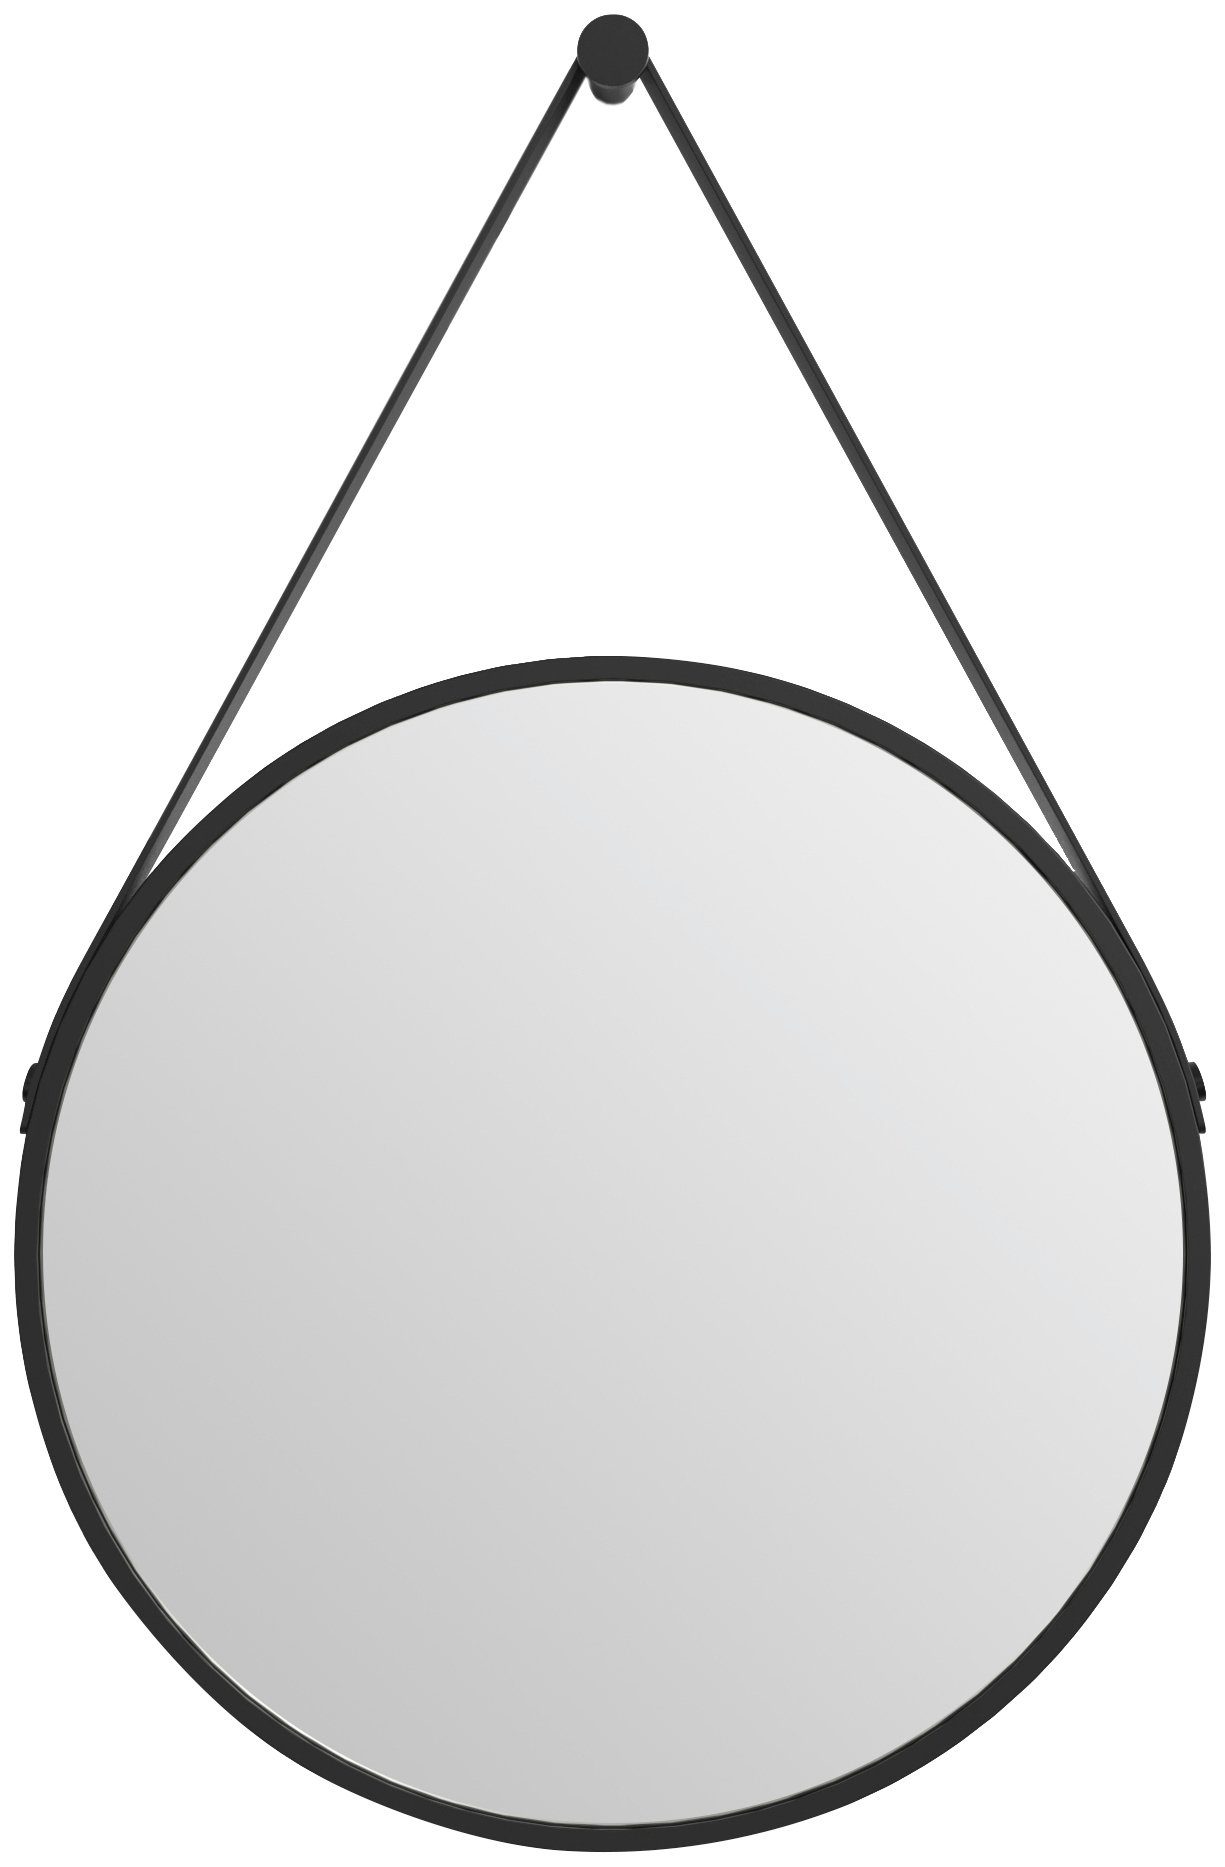 Talos Badspiegel Black Style, Durchmesser: 50 cm, mattschwarz lackiert | Badspiegel